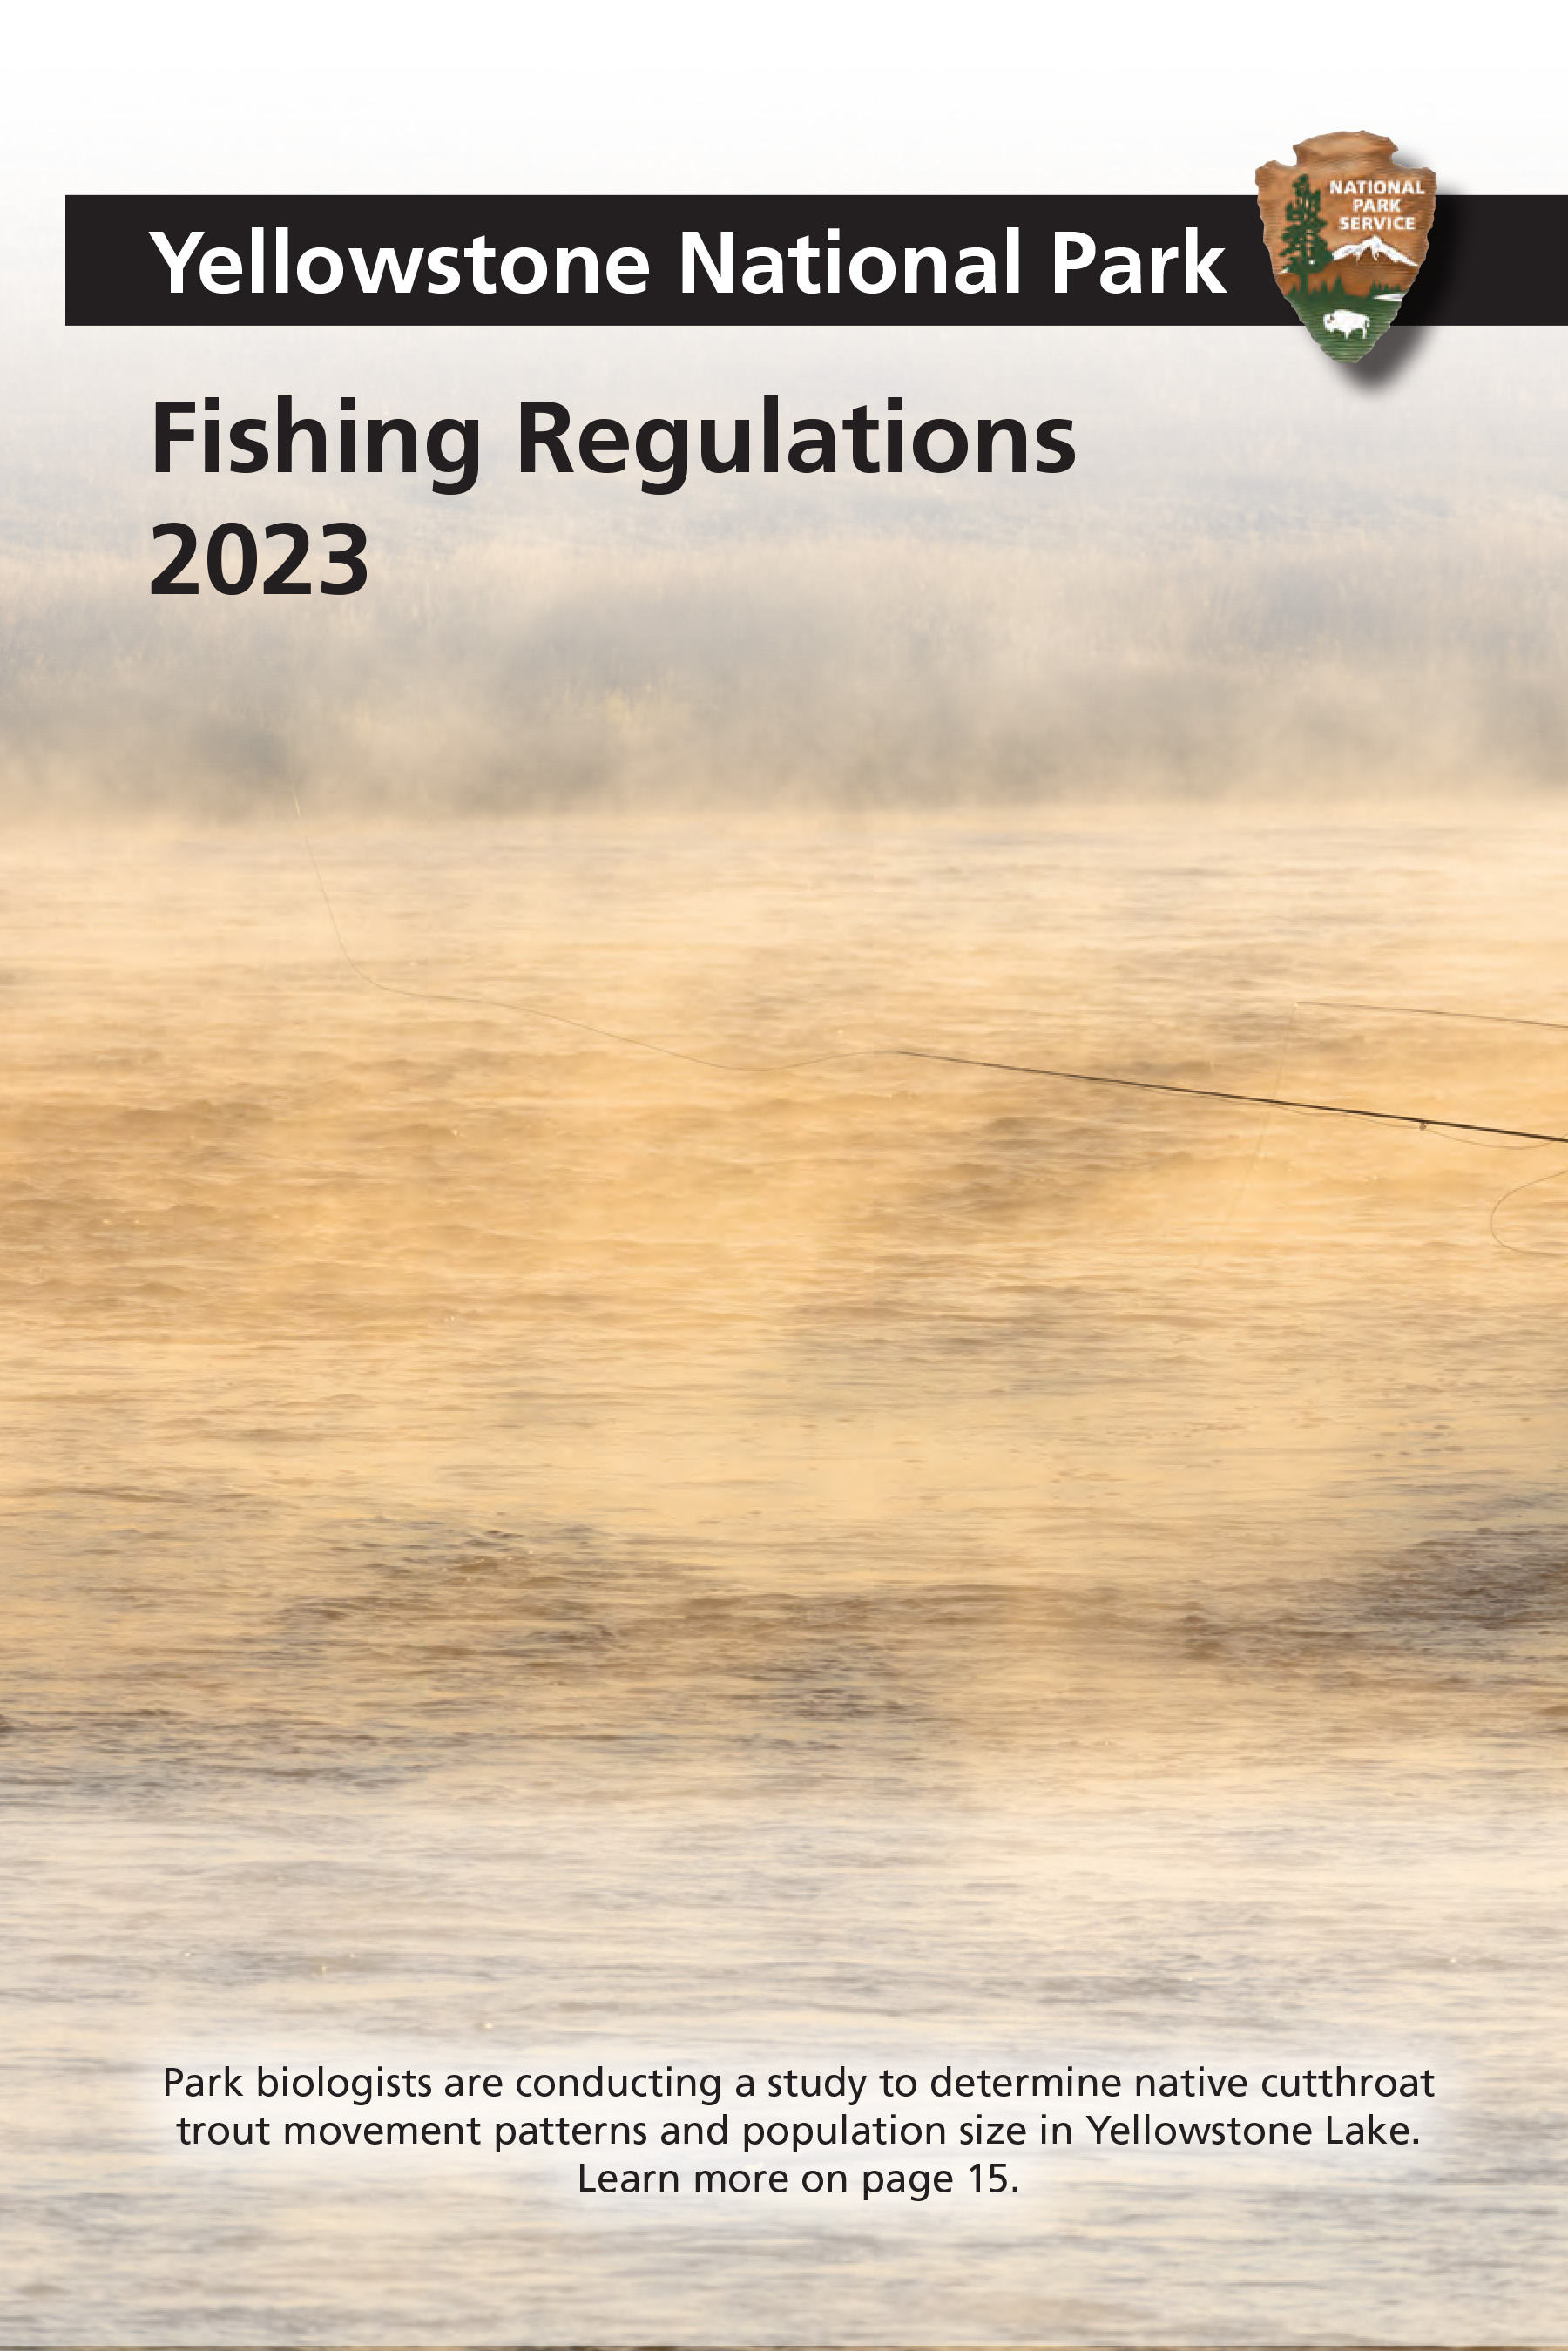 Yellowstone Fishing Regulations Page 1 - NPS Image